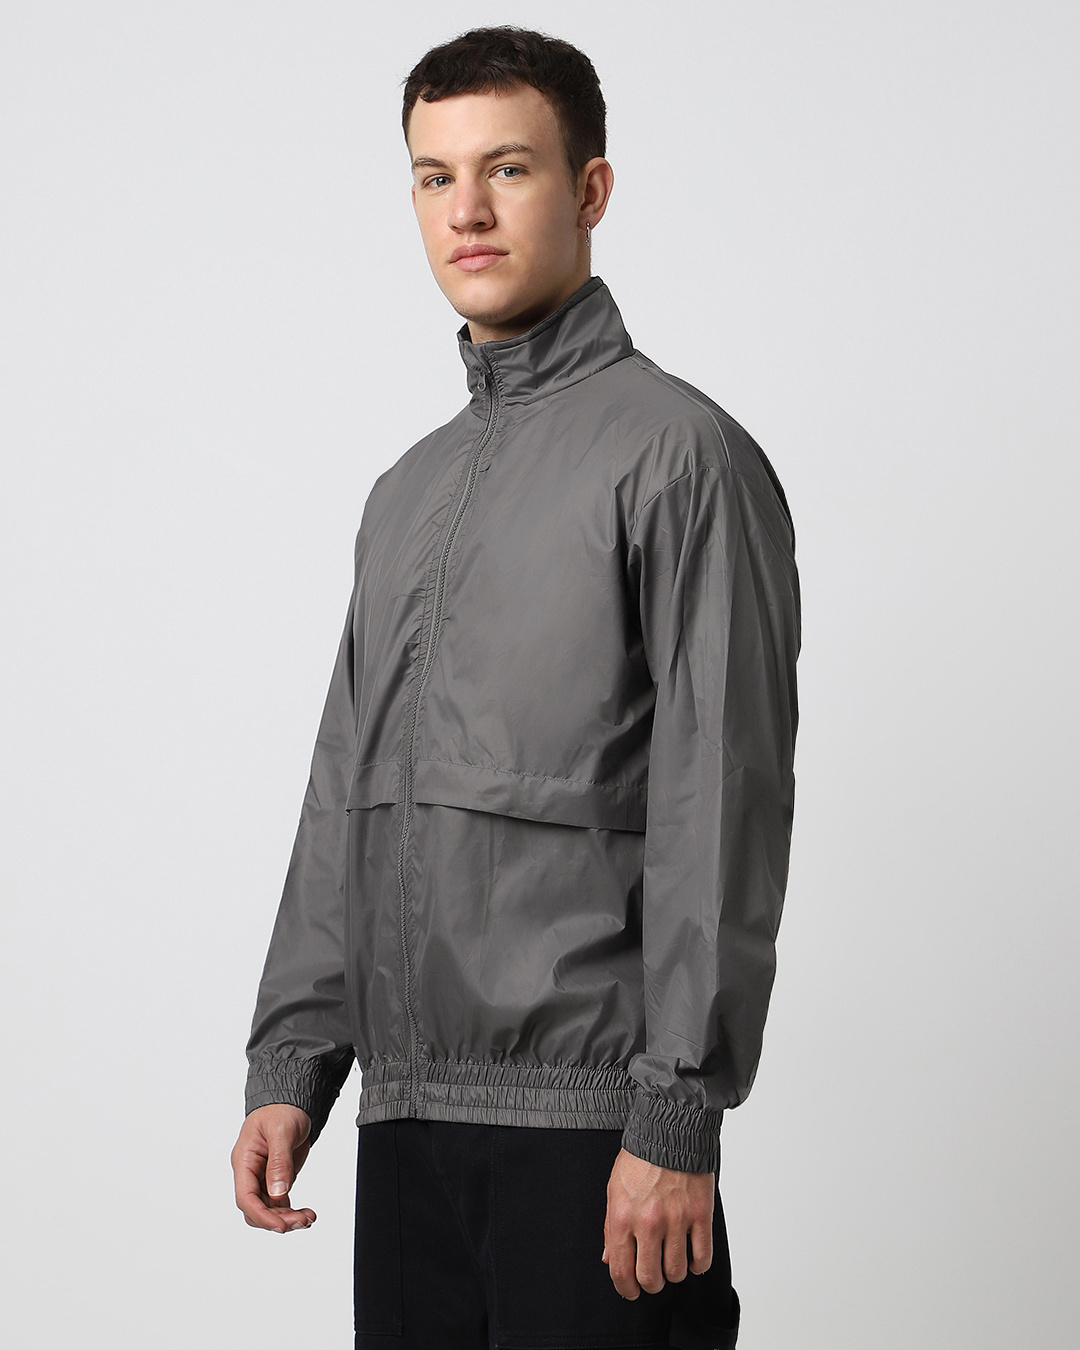 Buy Men's Grey Oversized Windcheater Jacket Online at Bewakoof